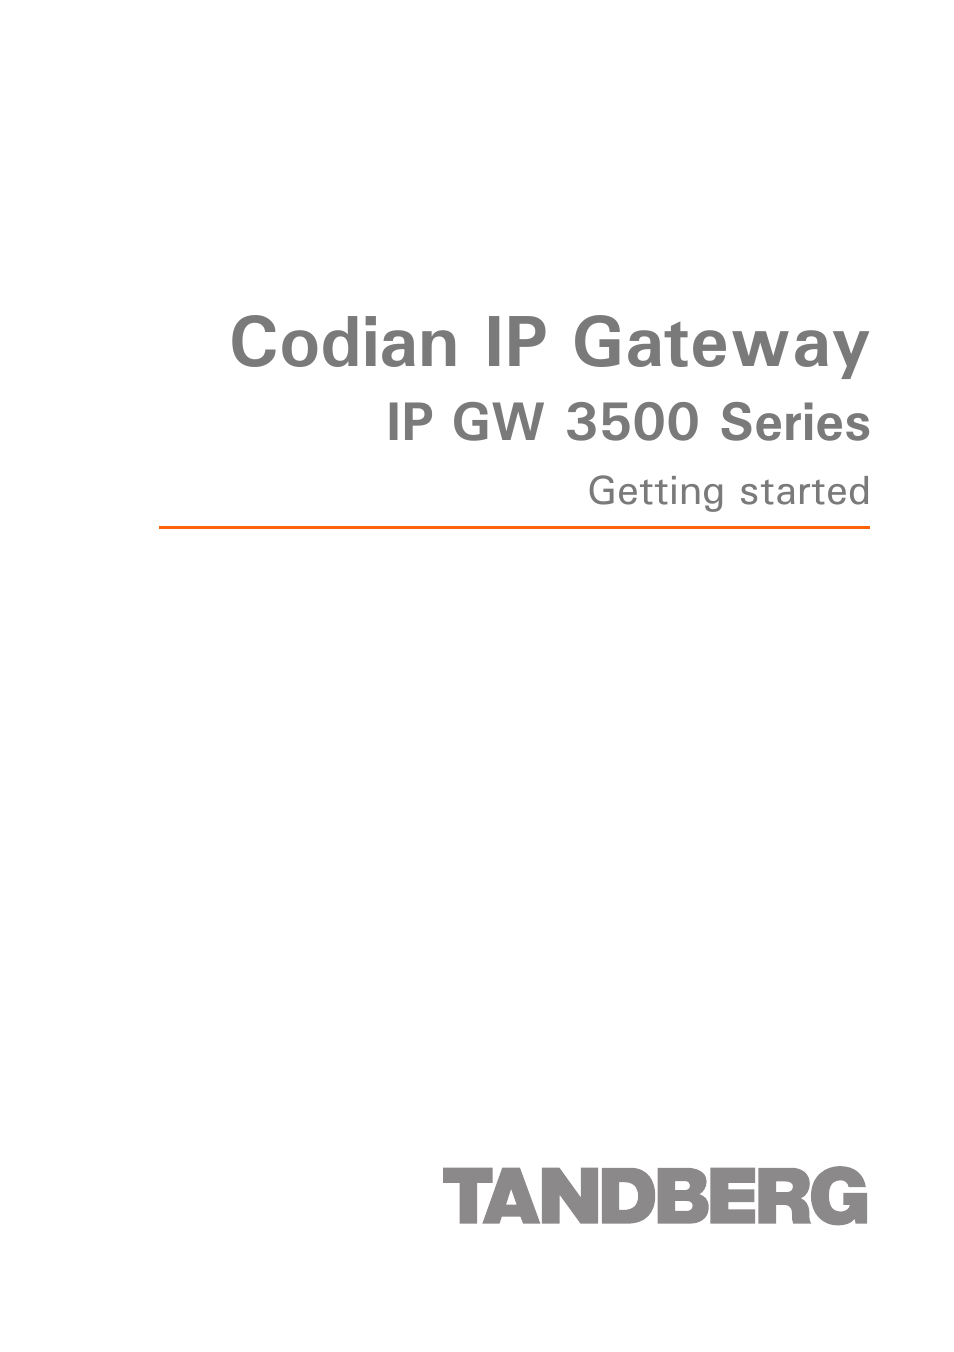 IP GW 3500